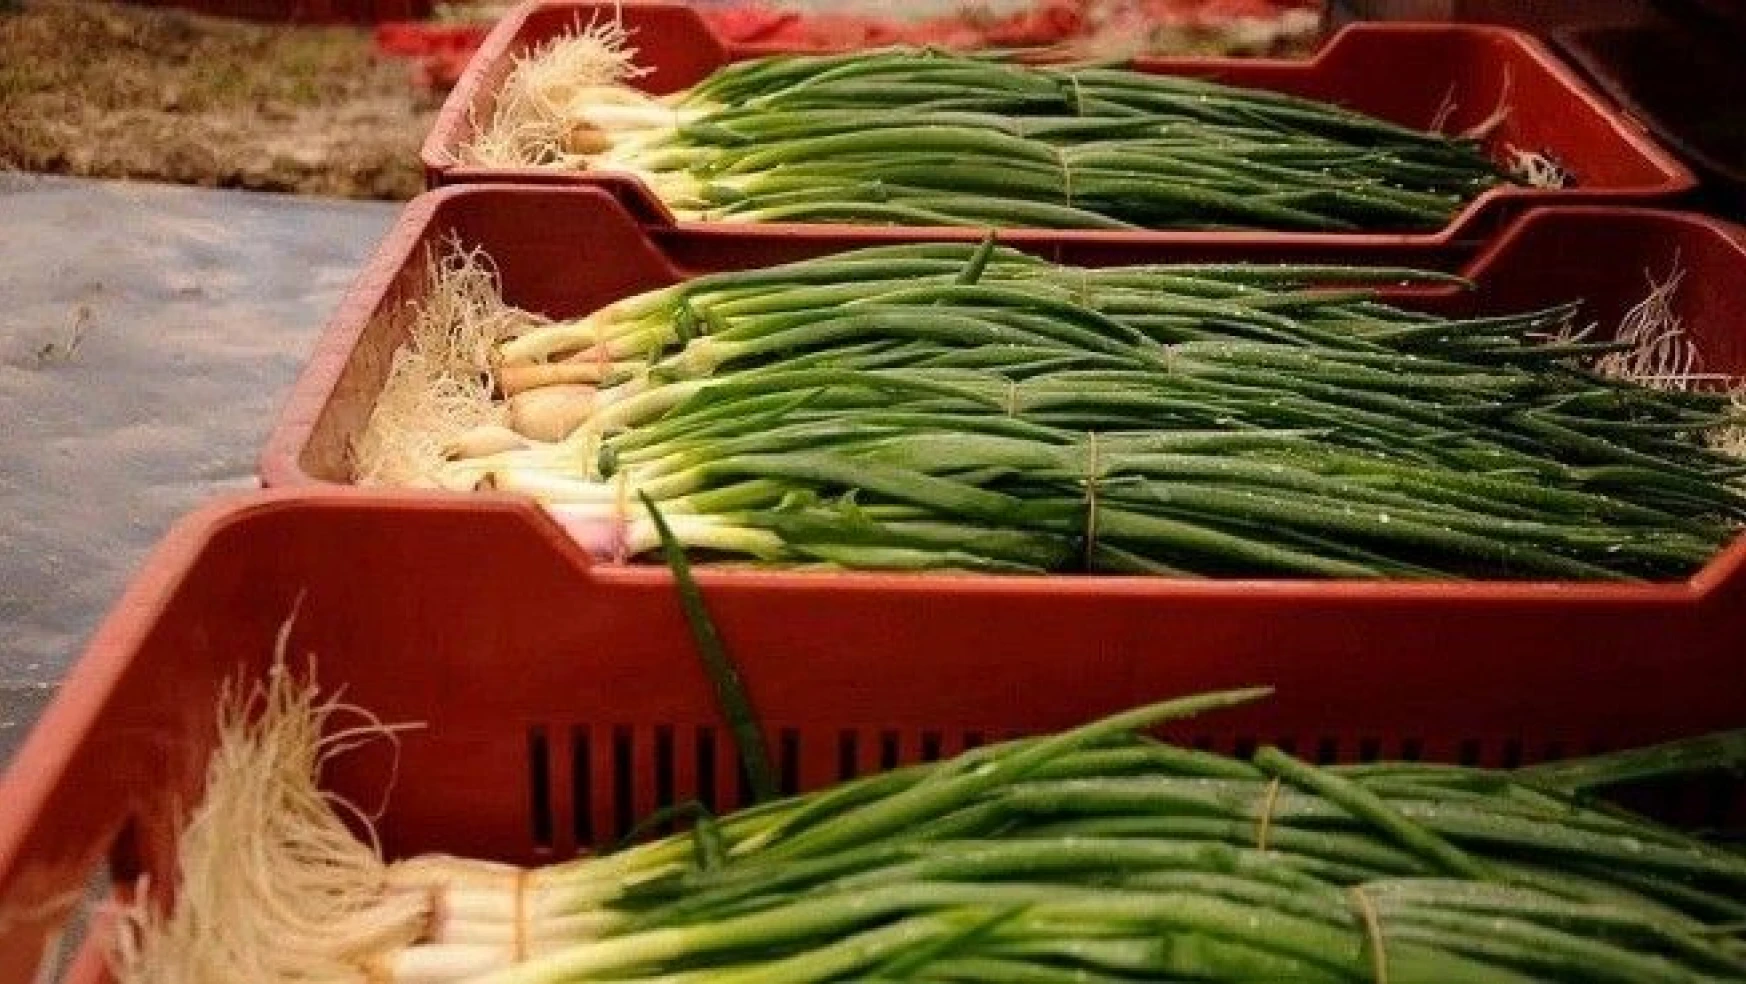 Kasımda en çok yeşil soğanın fiyatı arttı